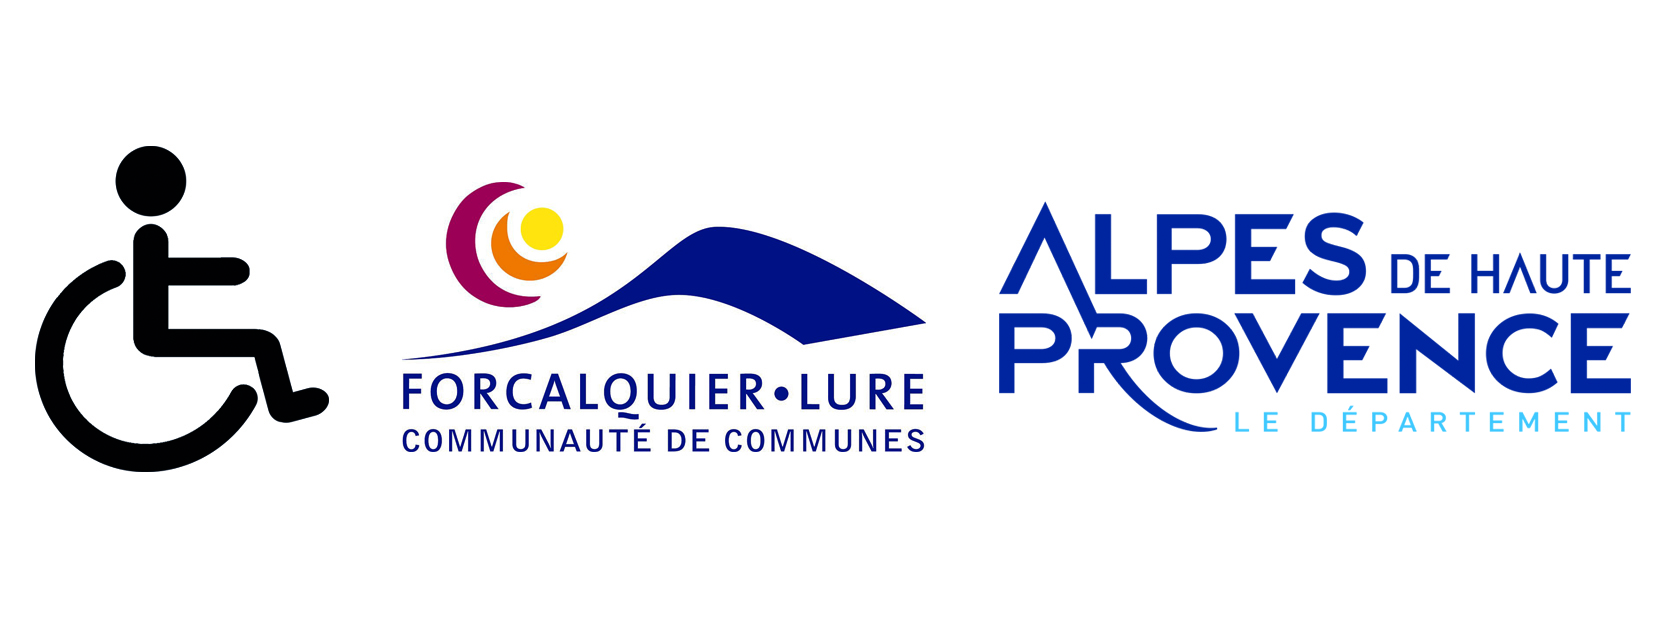 Logo de la communauté de commune, du département et d'accessibilité